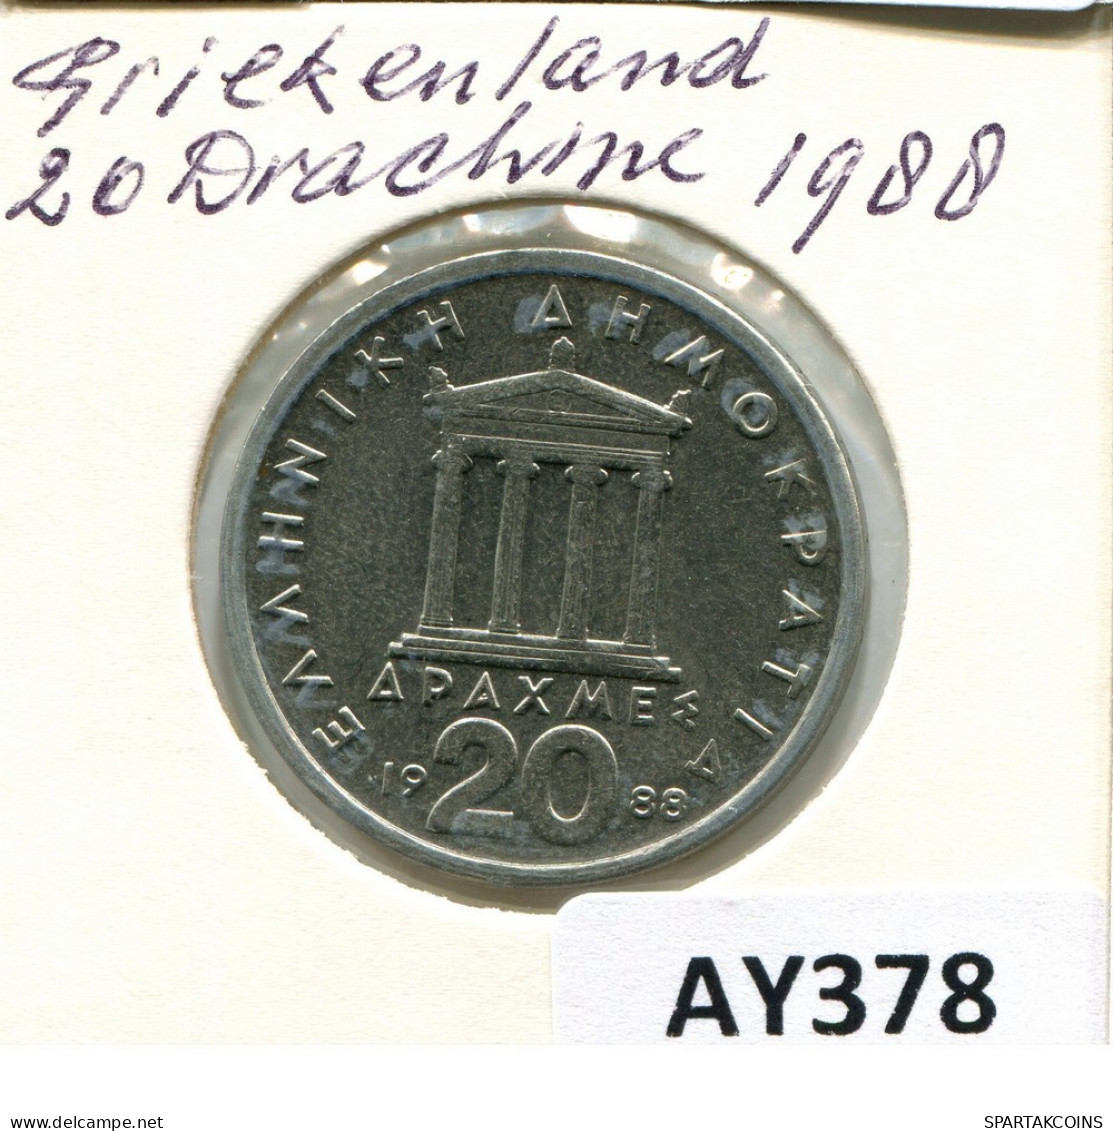 20 DRACHMES 1988 GREECE Coin #AY378.U.A - Grecia